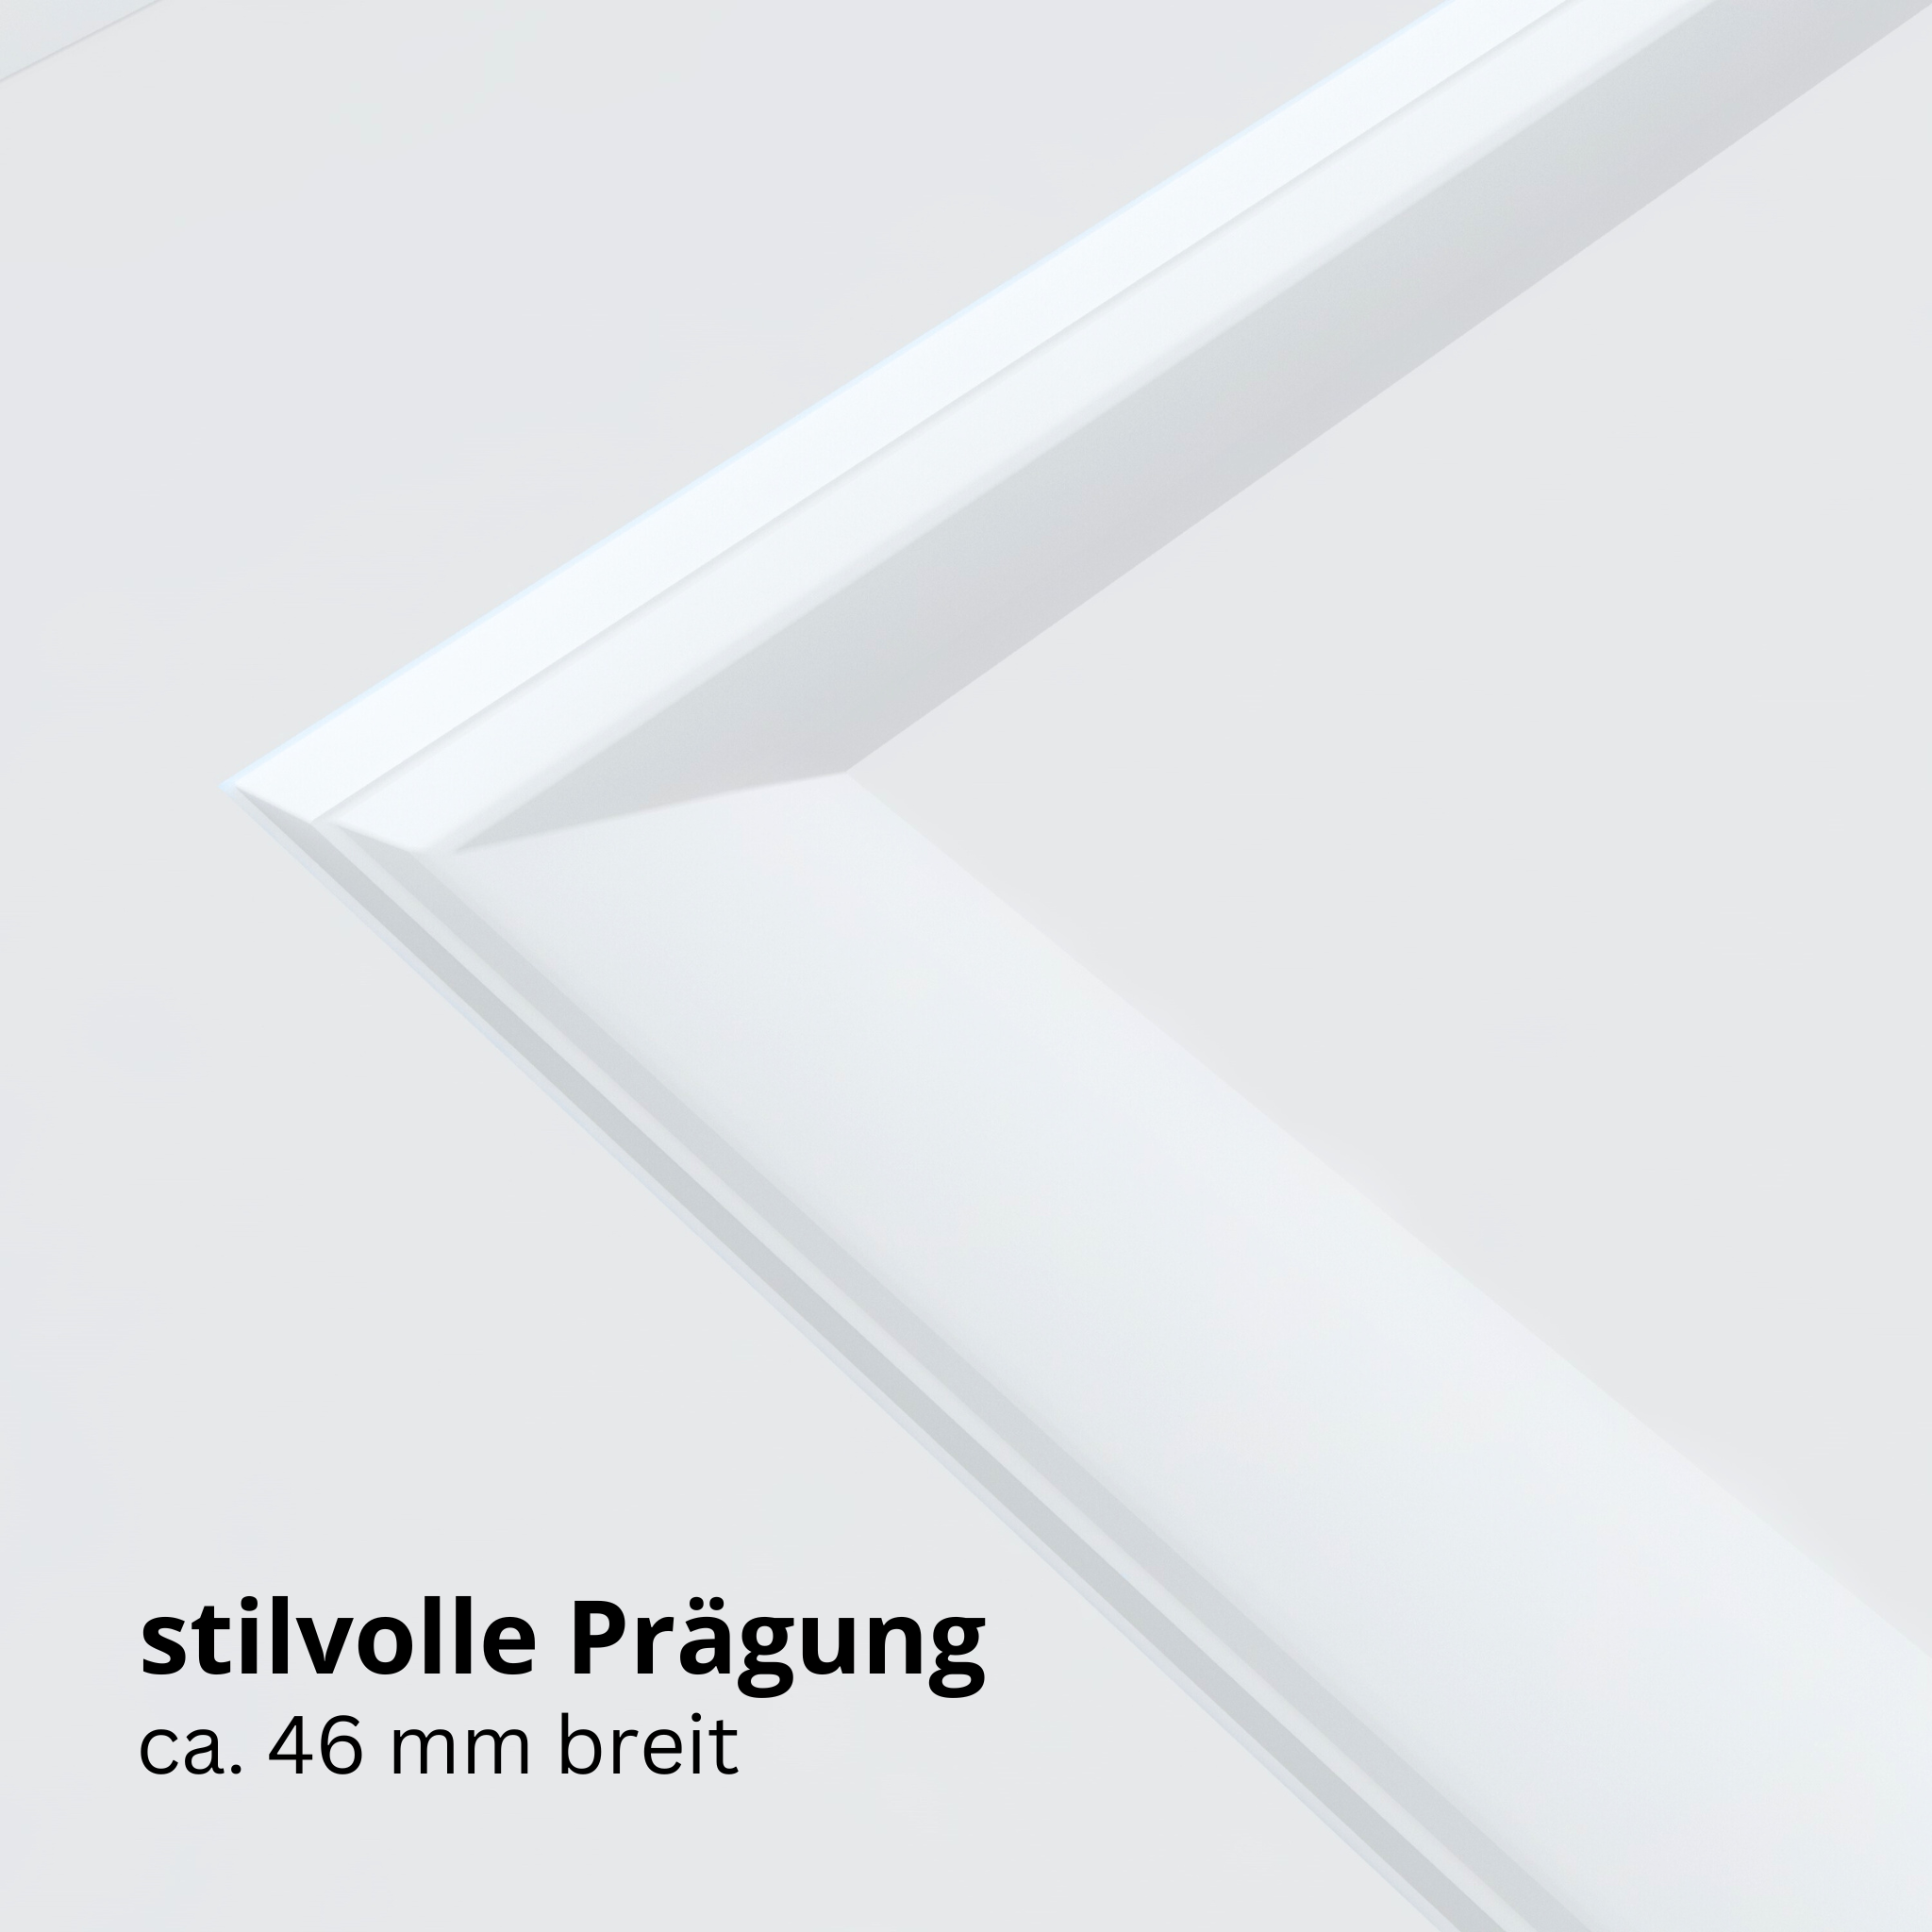 Wohnungseingangstür brillant-weiß 2 Kassetten Designkante SK3 / KK3 - Modell Stiltür K23